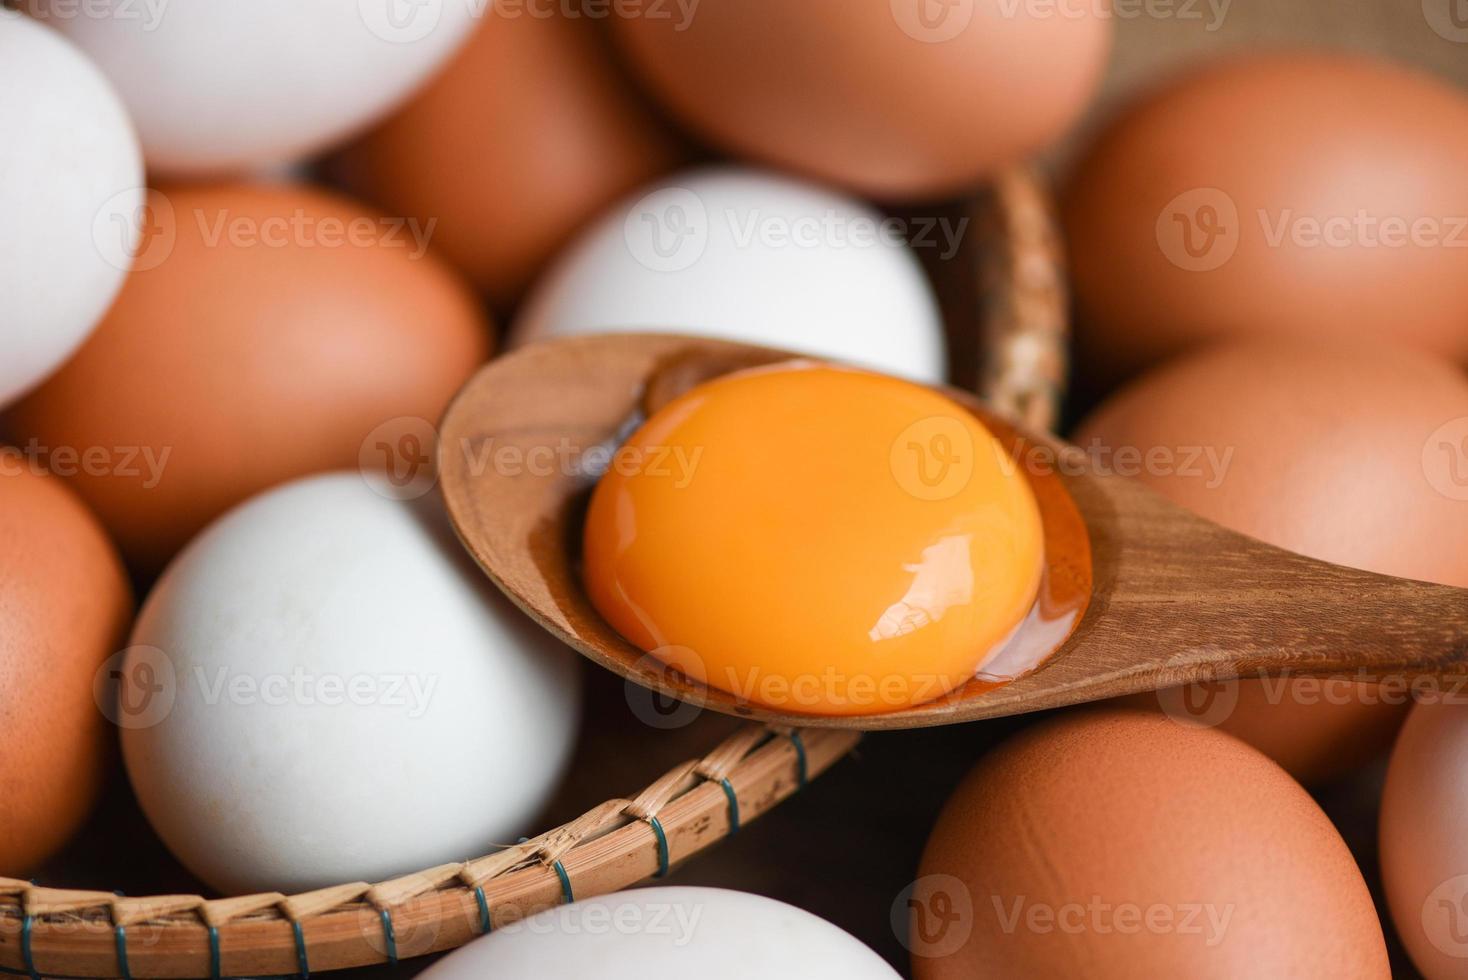 uova di gallina e uova di anatra raccolgono da prodotti agricoli naturali in un concetto di alimentazione sana del cestino, tuorlo d'uovo rotto fresco foto